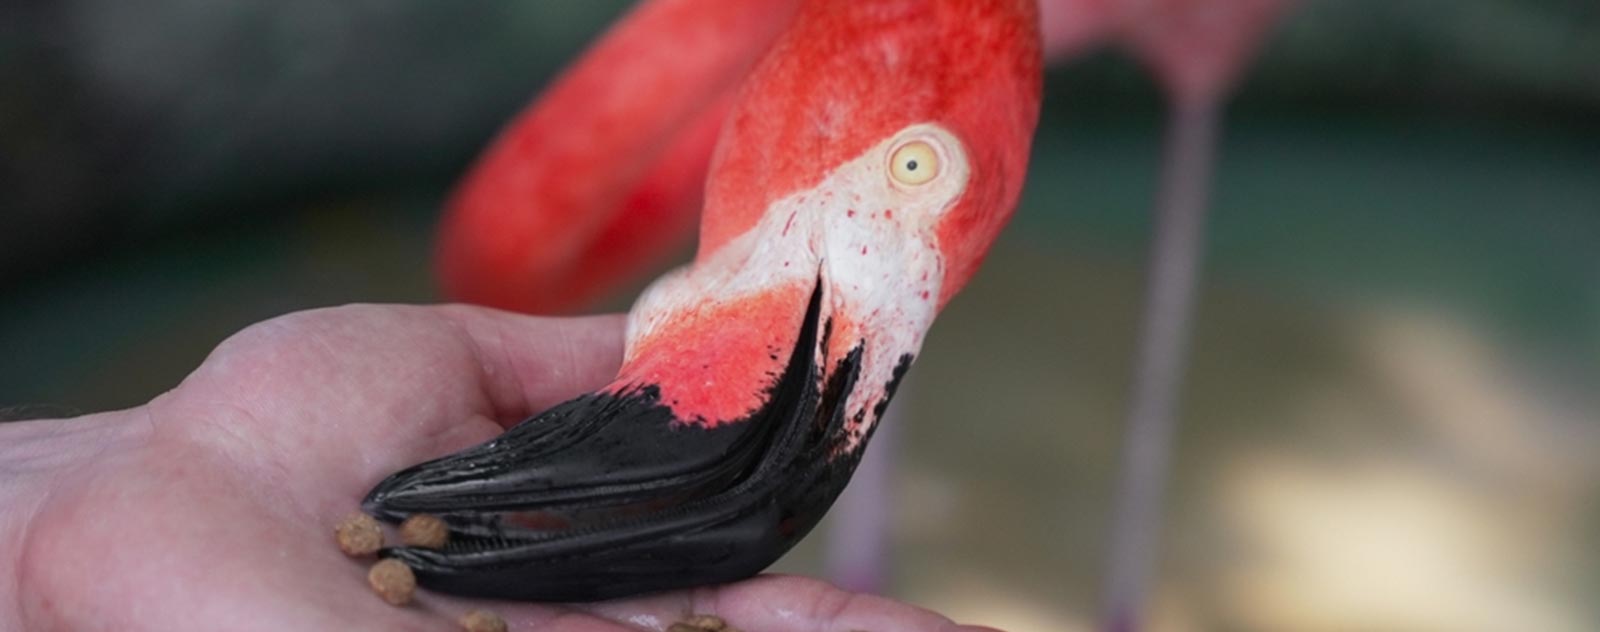 flamingo-pink-eat